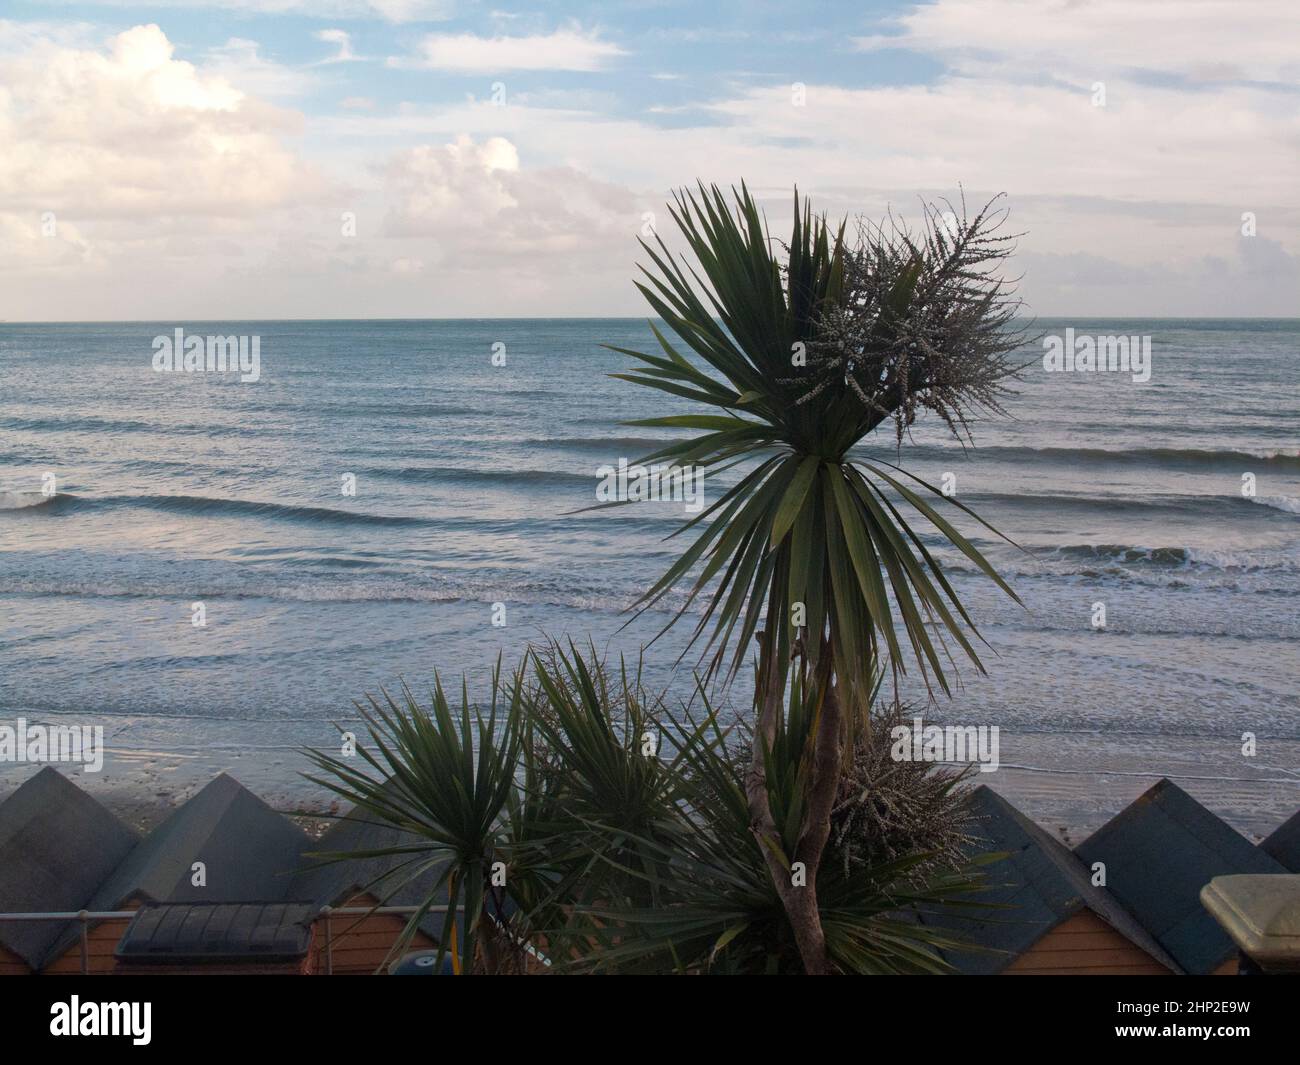 Vue sur la mer avec ciel bleu, ciel nuageux, palmiers et cabines de plage Banque D'Images